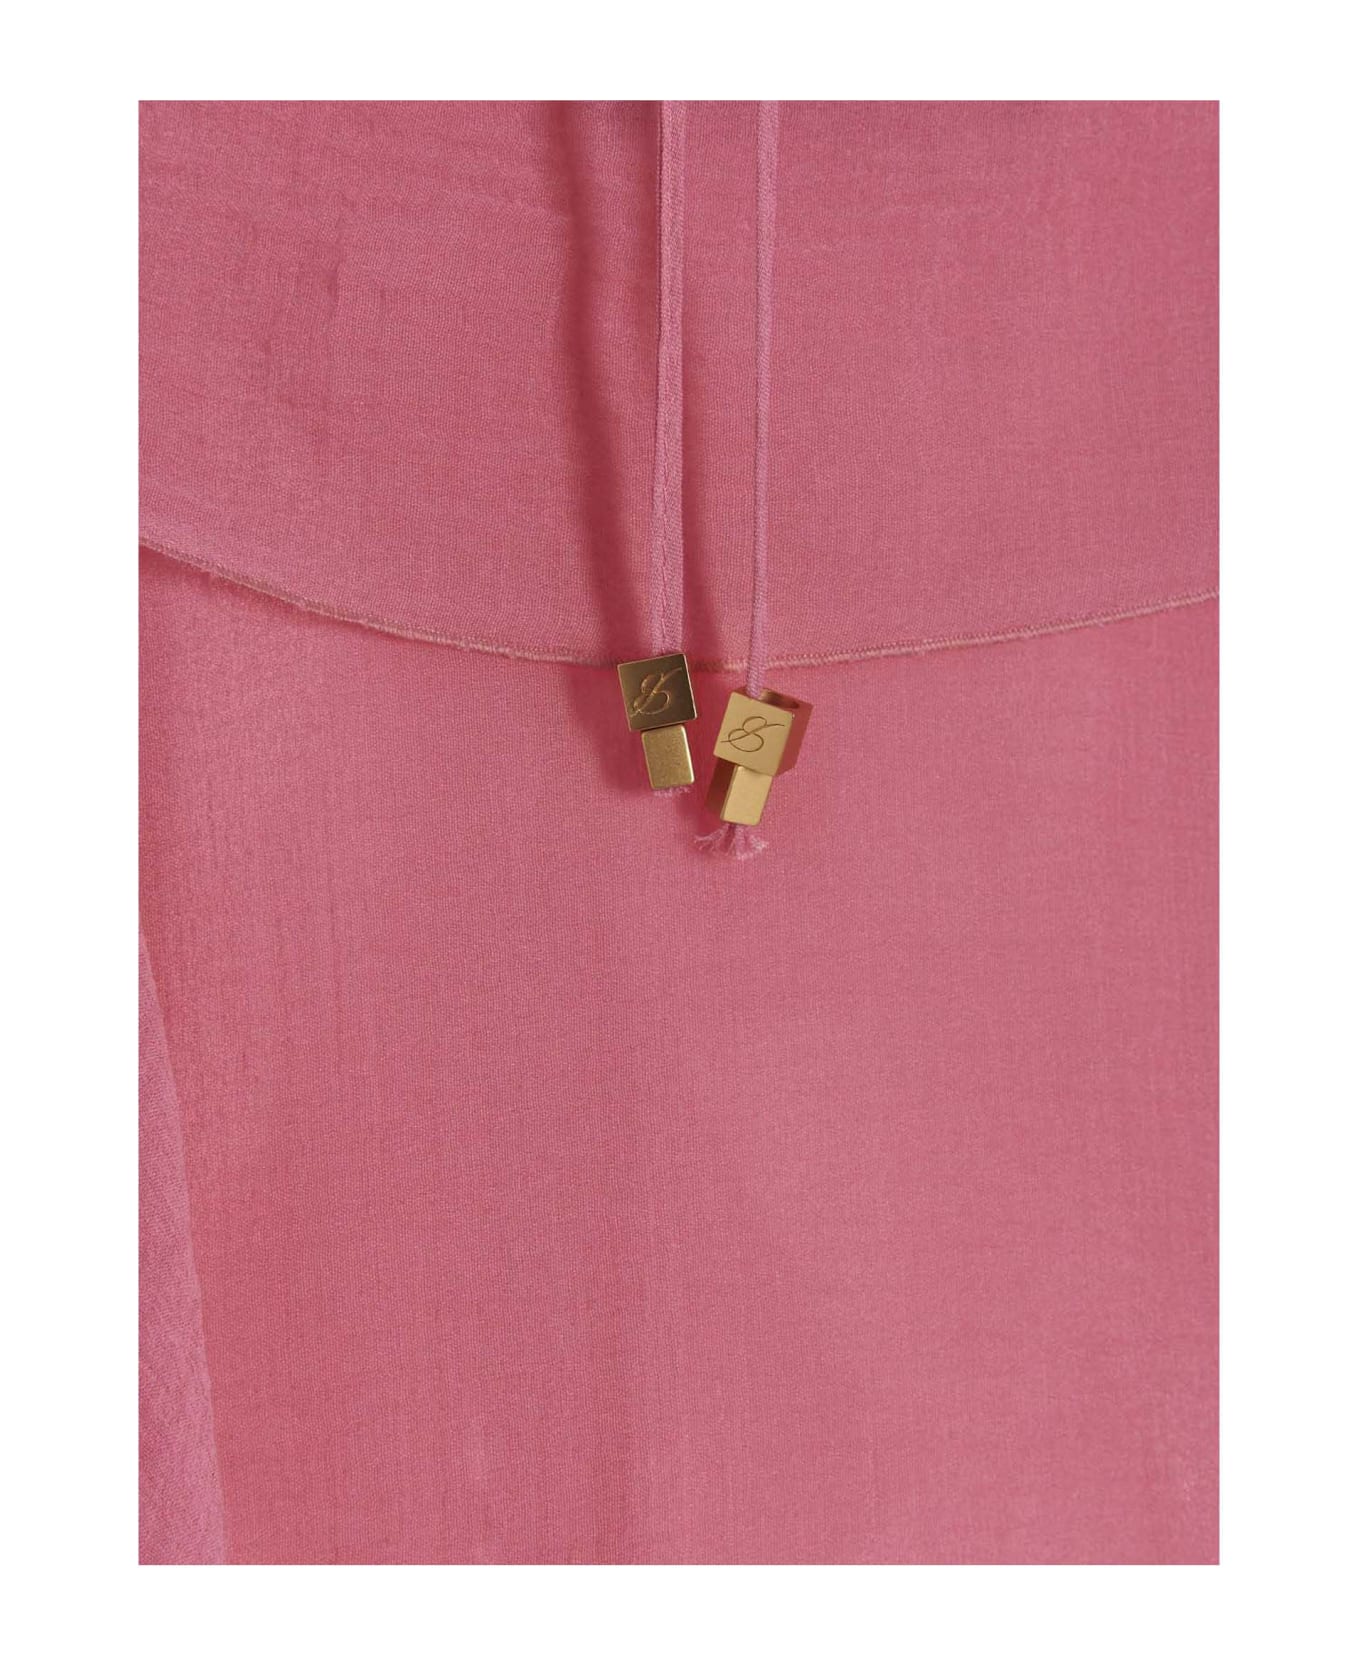 Blumarine Flounced Silk Dress - Pink